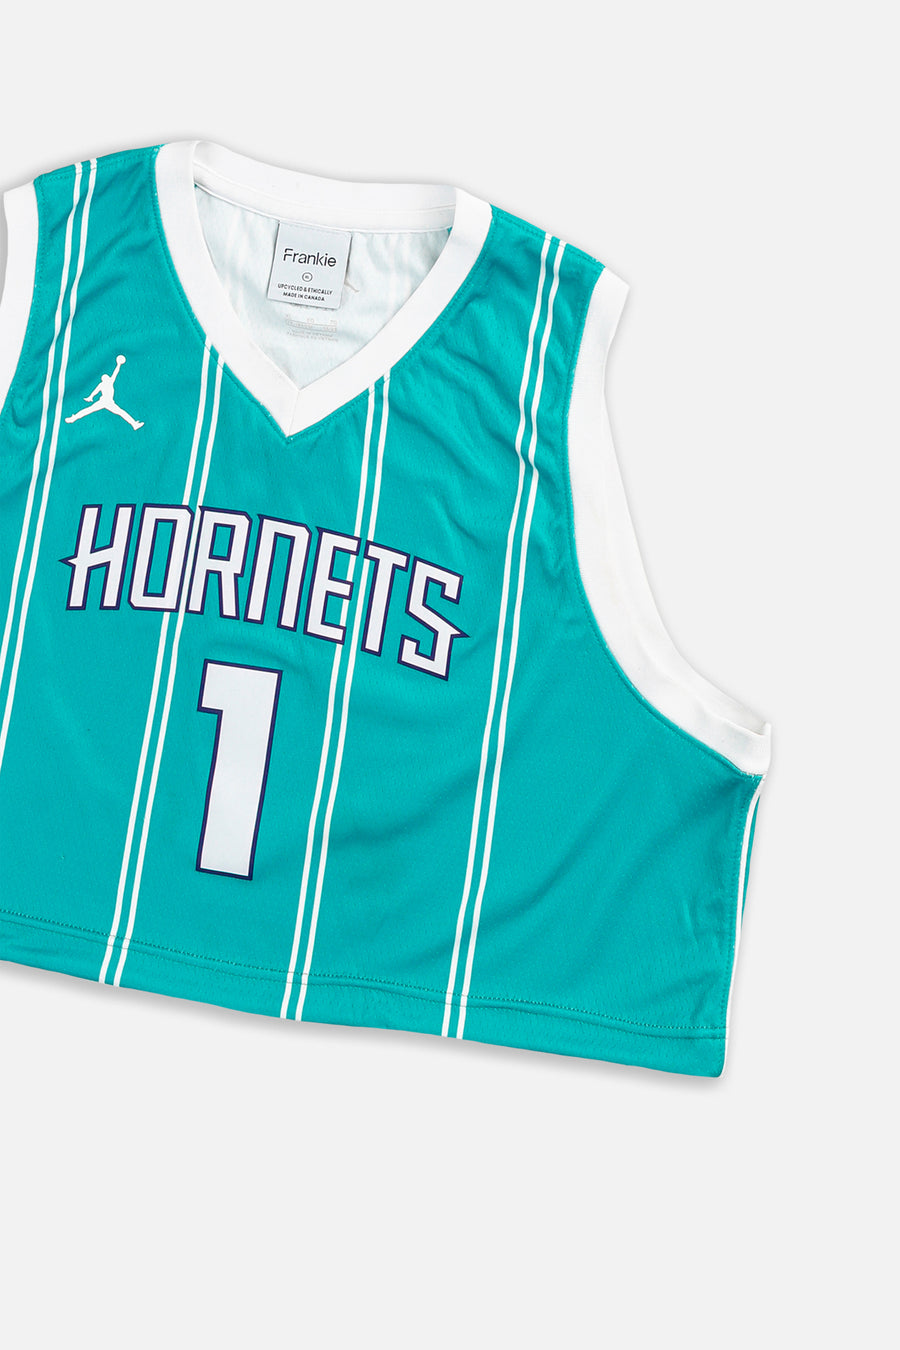 Rework Charlotte Hornets Crop NBA Jersey - L, XL